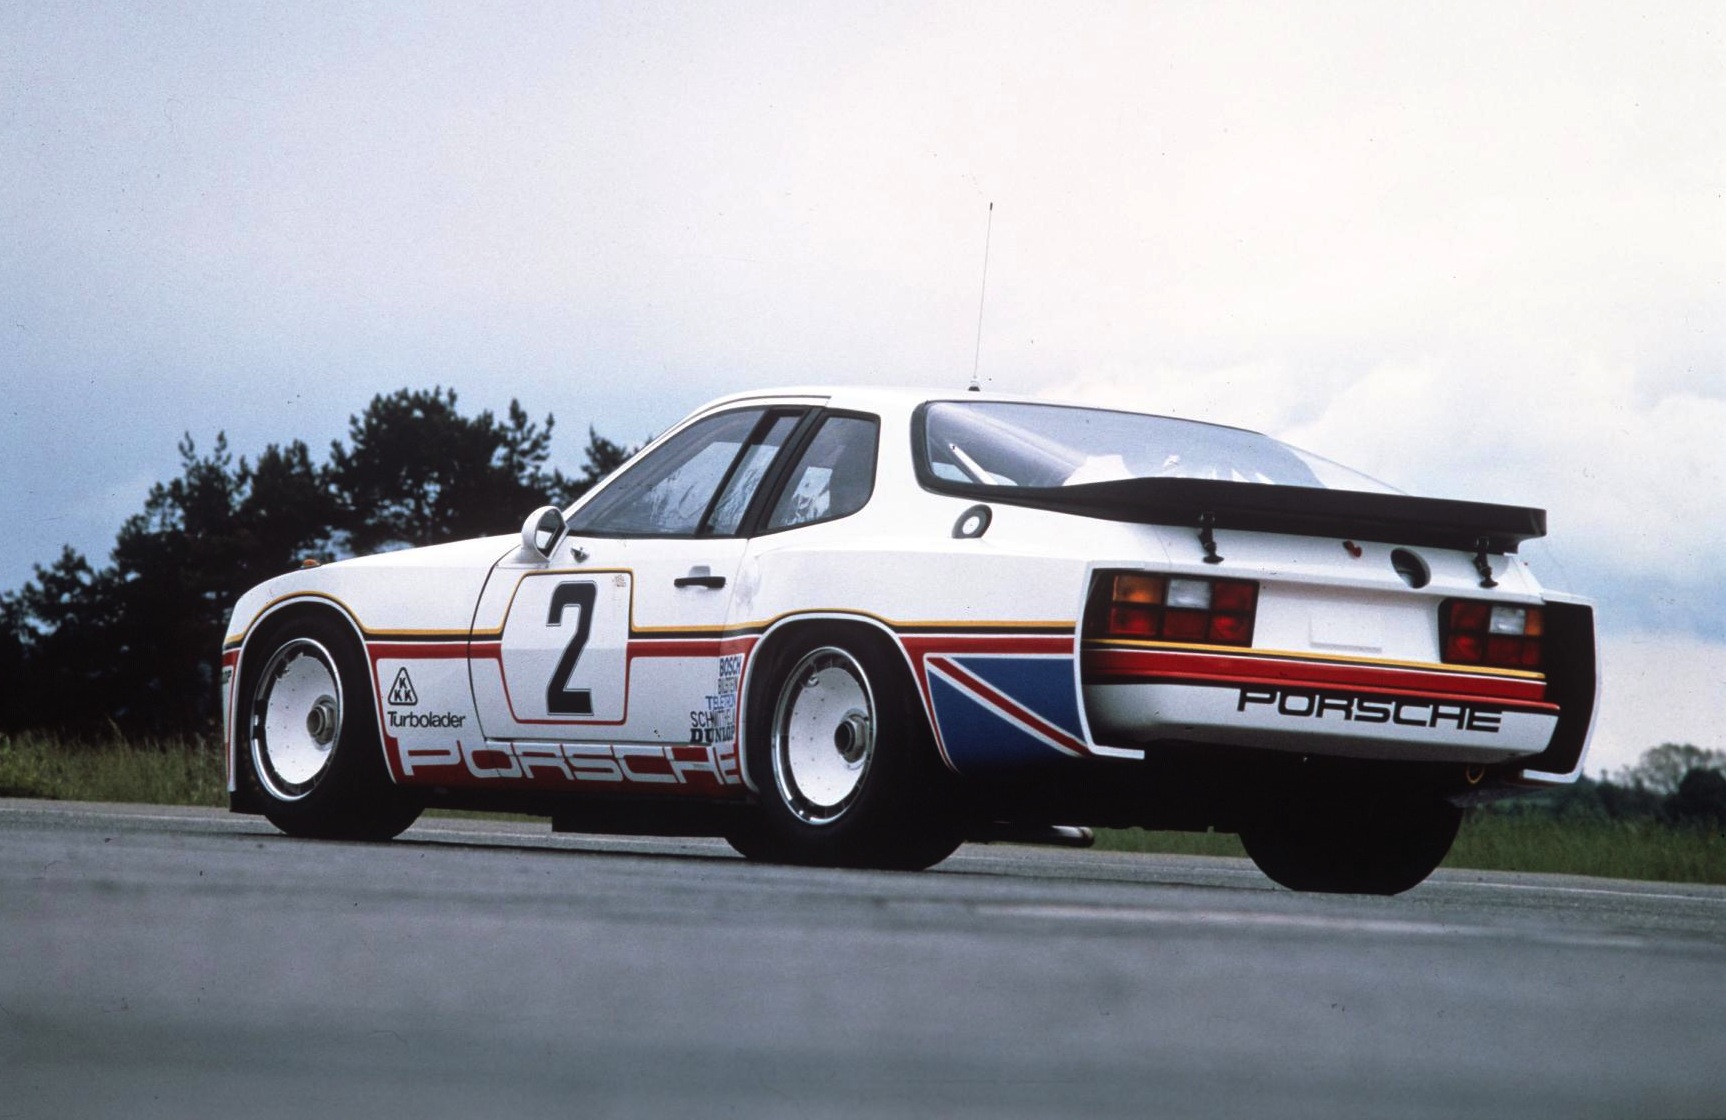 Porsche 924 GT Le Mans car returns home - Auto Addicts